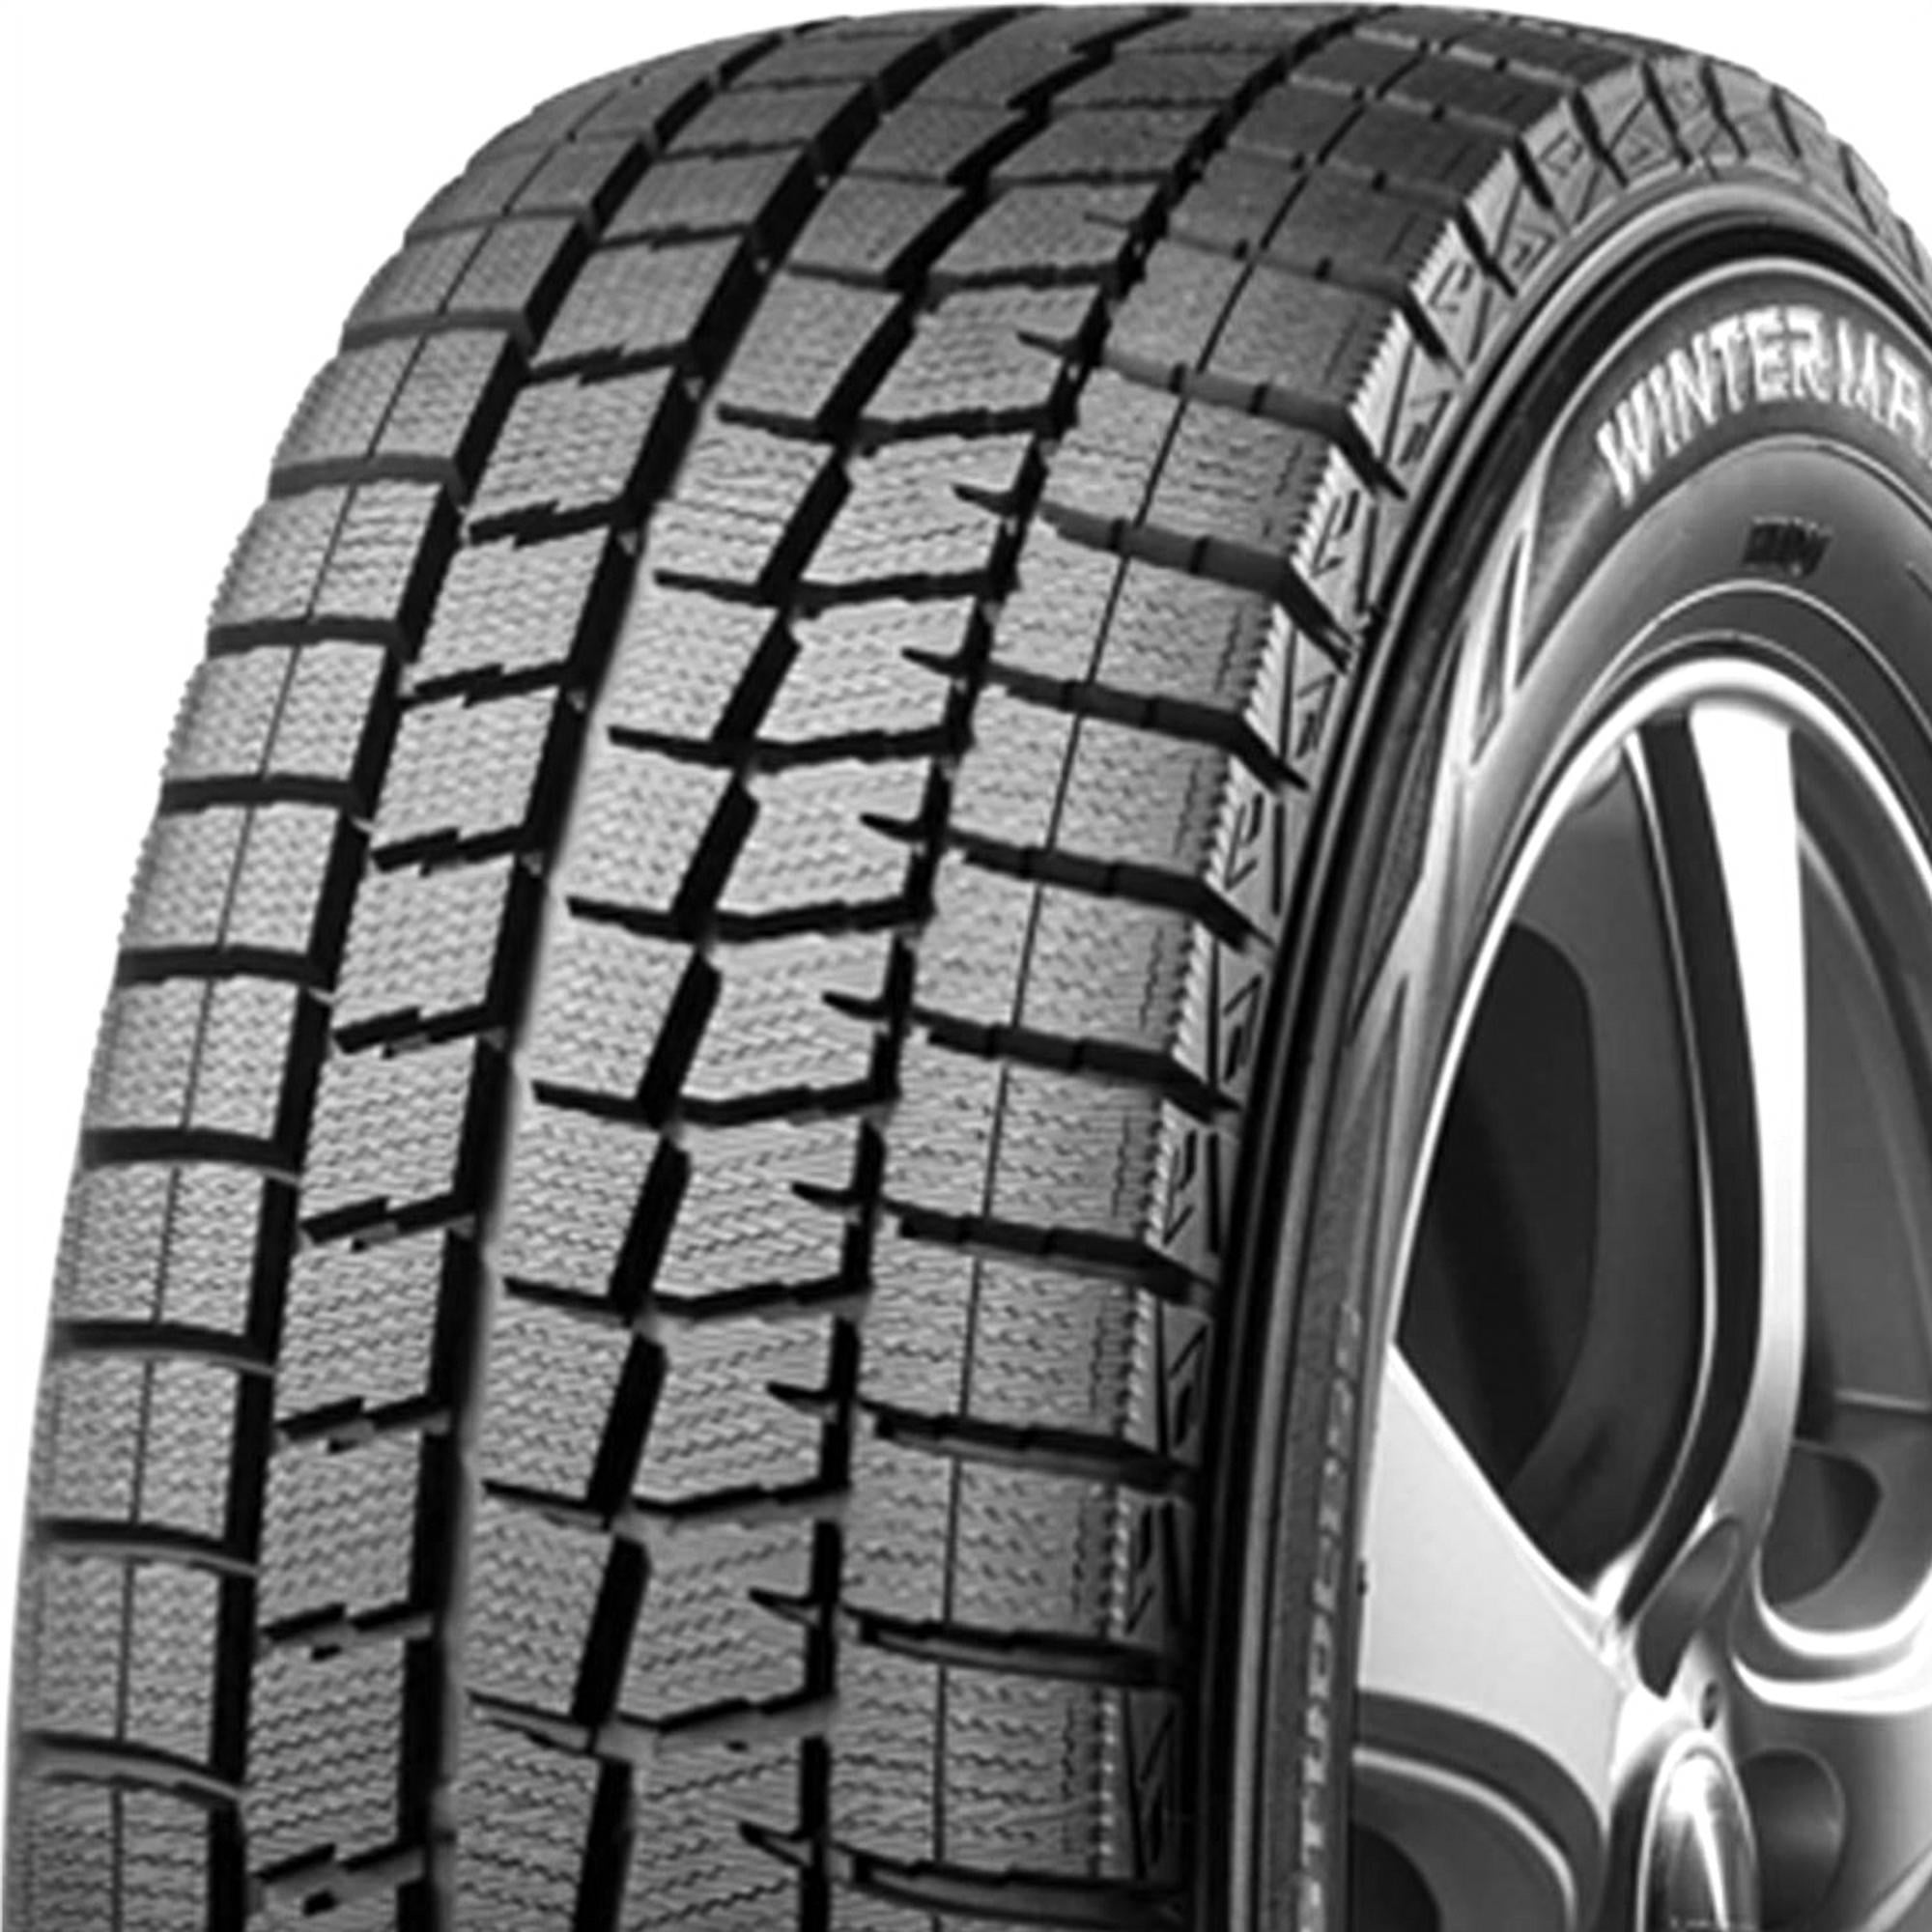 Dunlop Winter Maxx 185/65R15 88T (Studless) Snow Tire